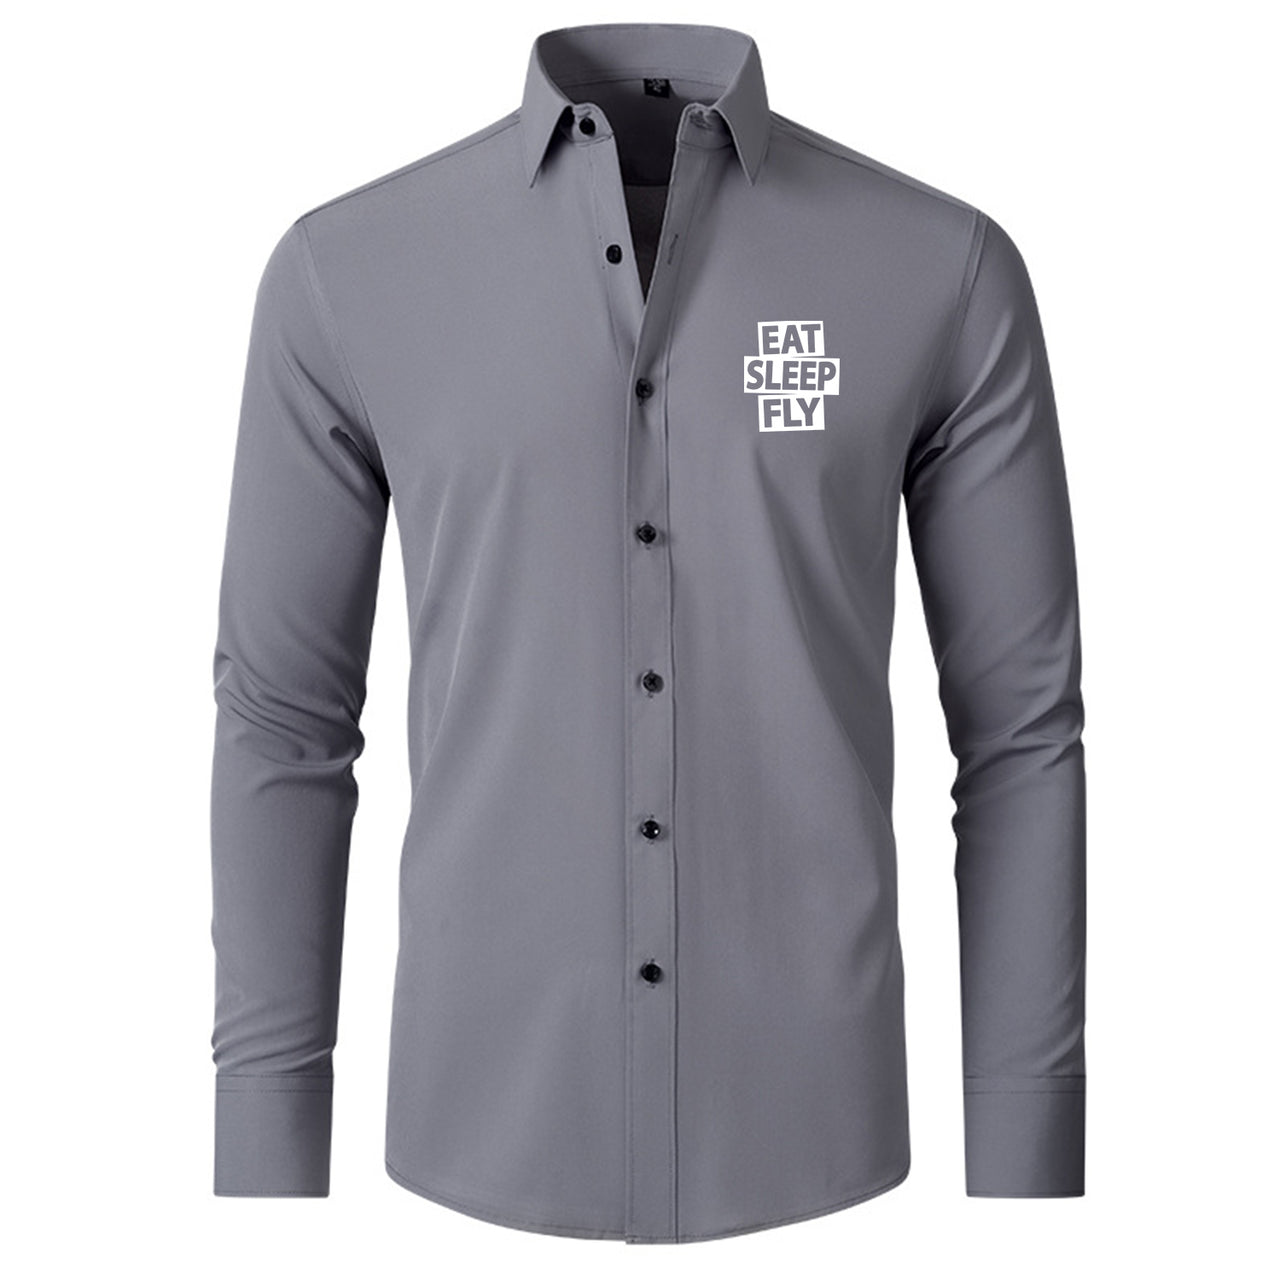 Eat Sleep Fly Designed Long Sleeve Shirts